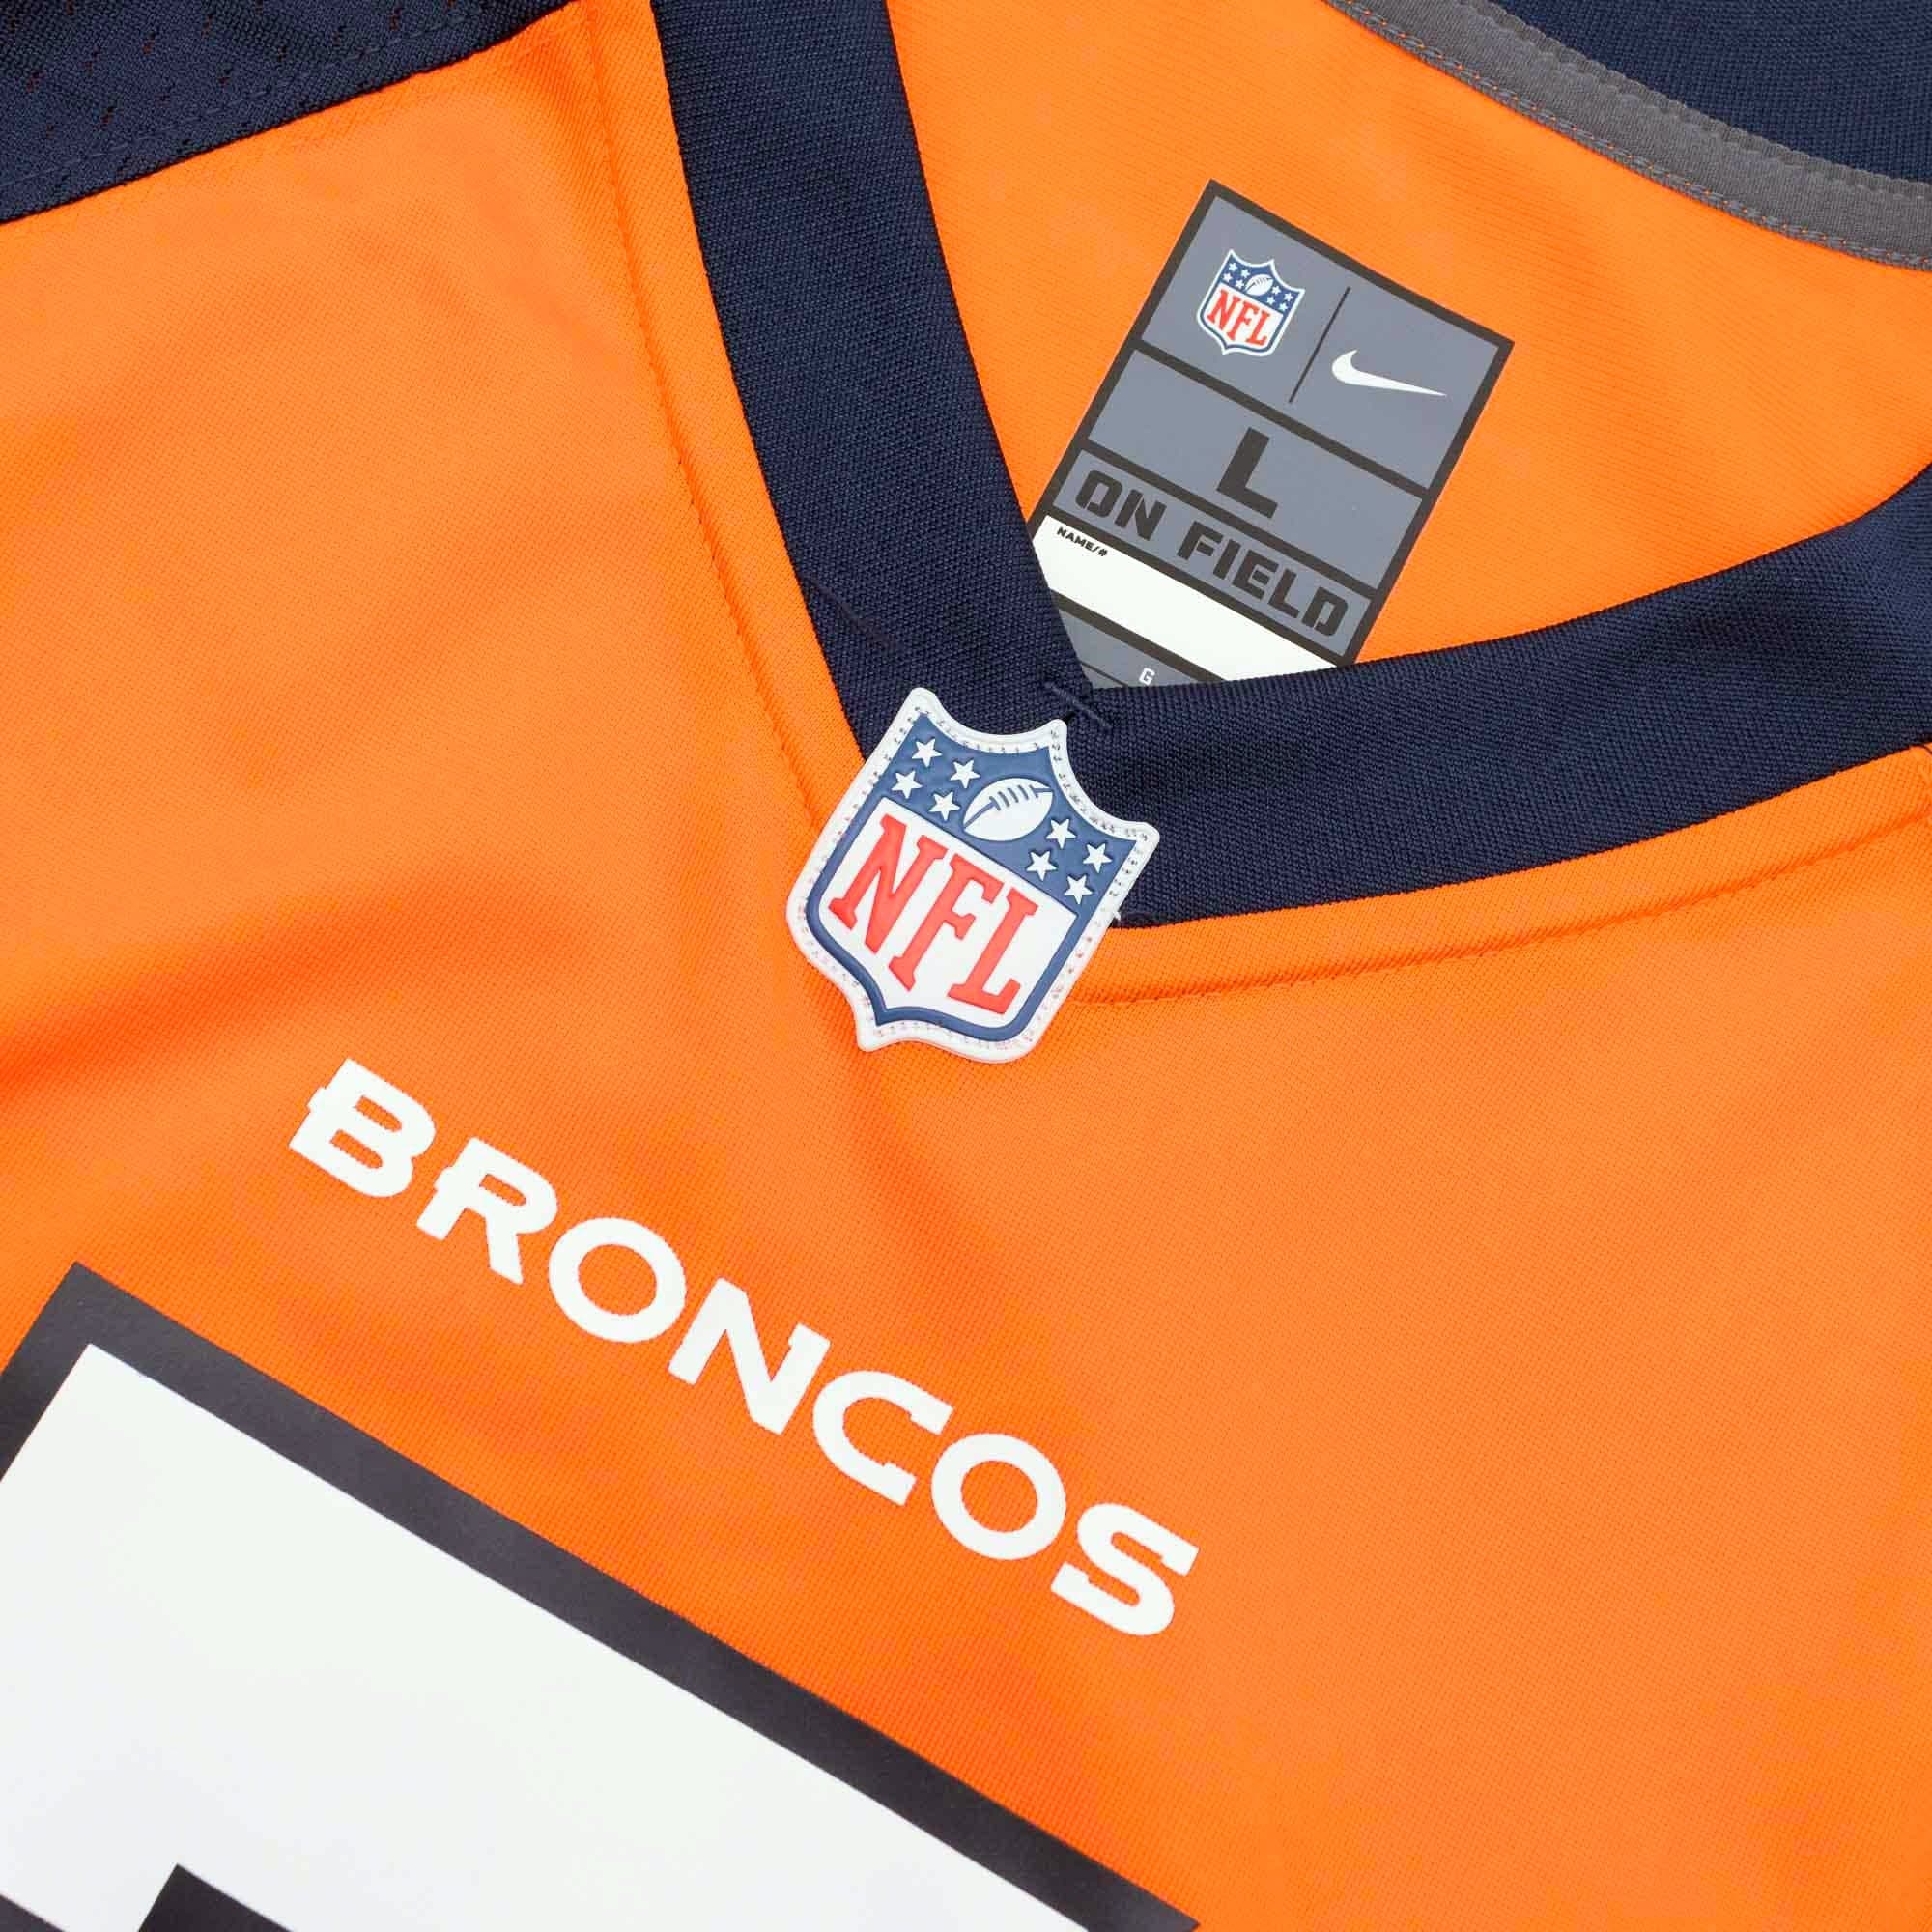  Nike Russell Wilson Denver Broncos NFL Men's Orange